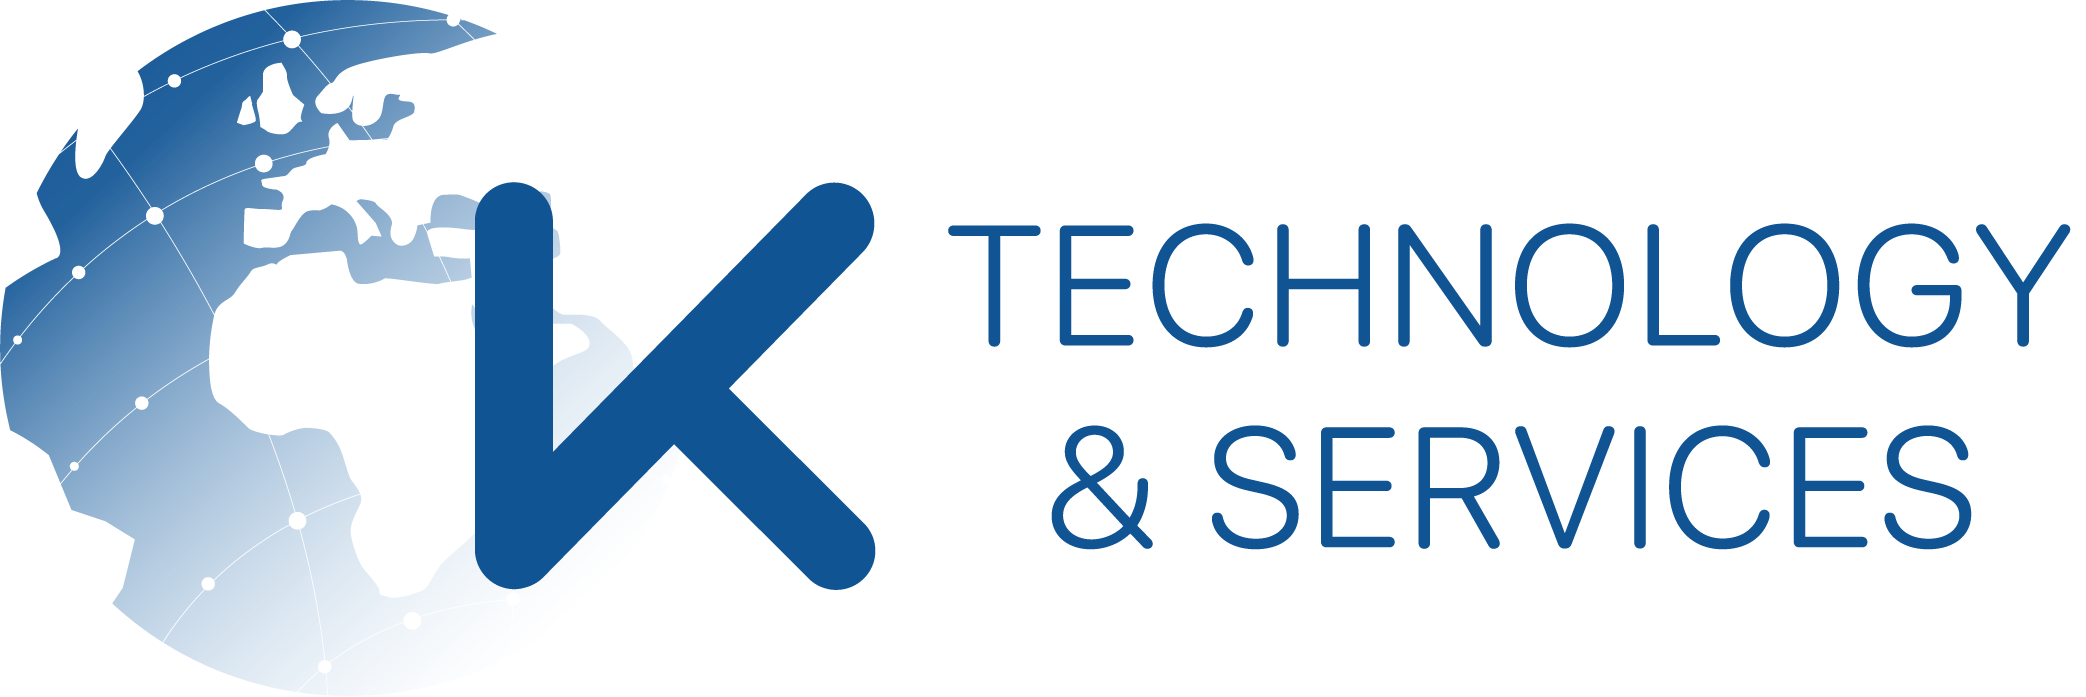 K-Technology & Services